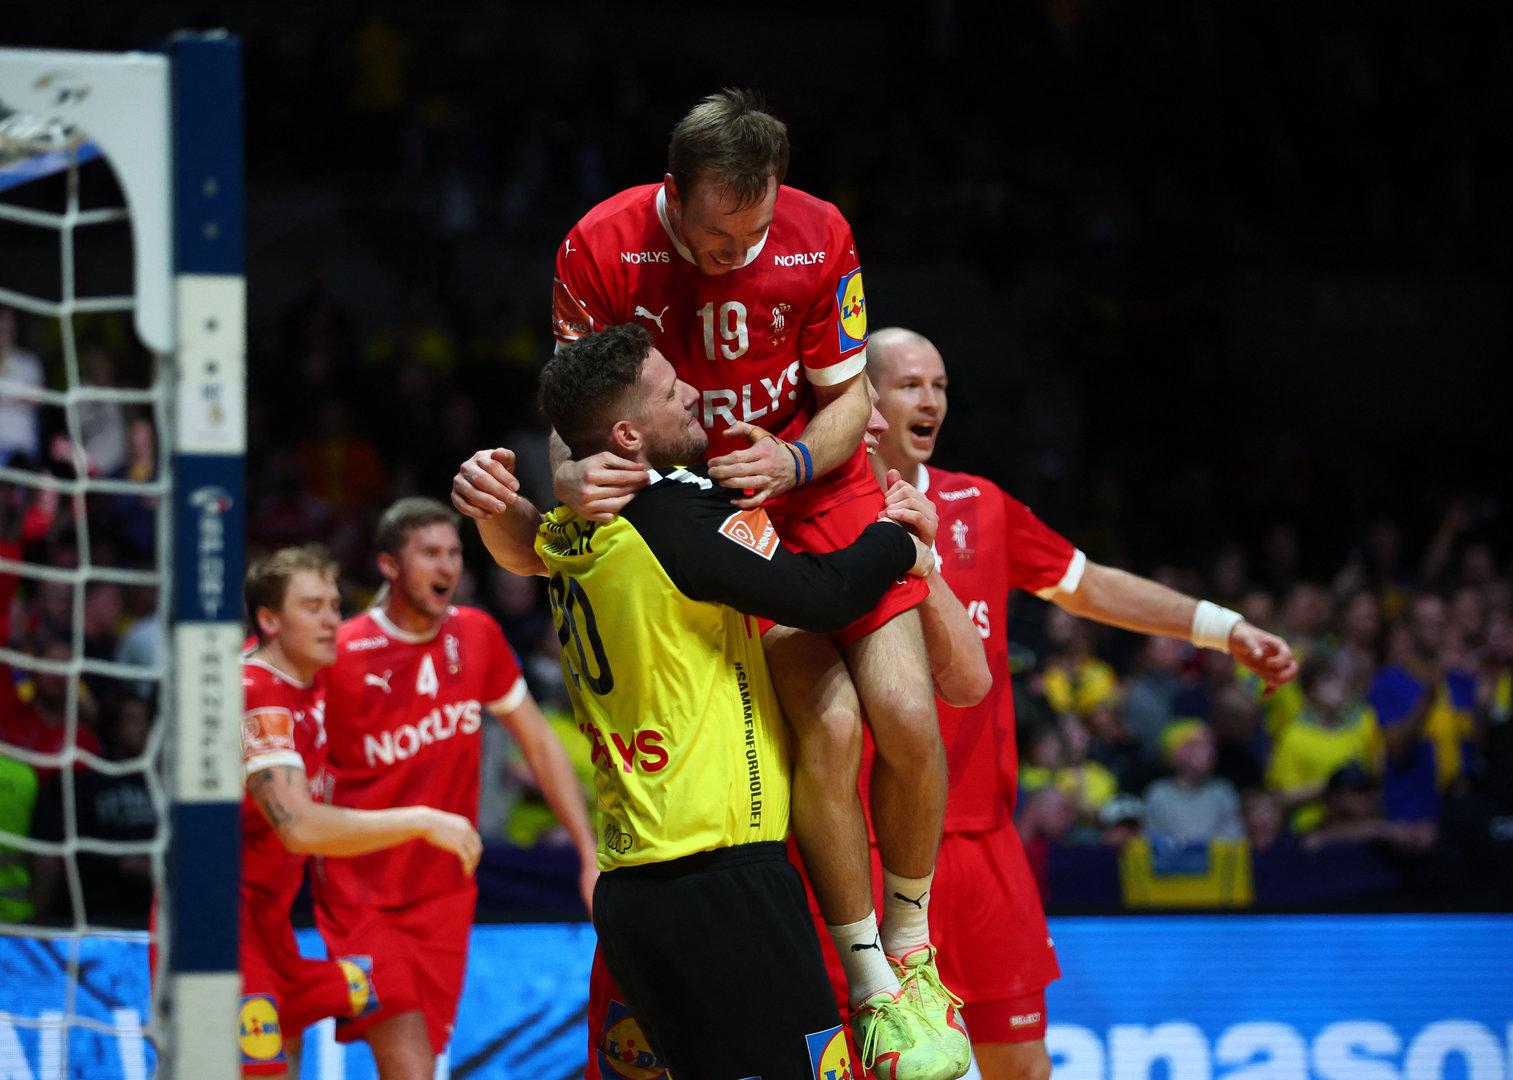 Dänemark ist zum dritten Mal in Folge Handball-Weltmeister